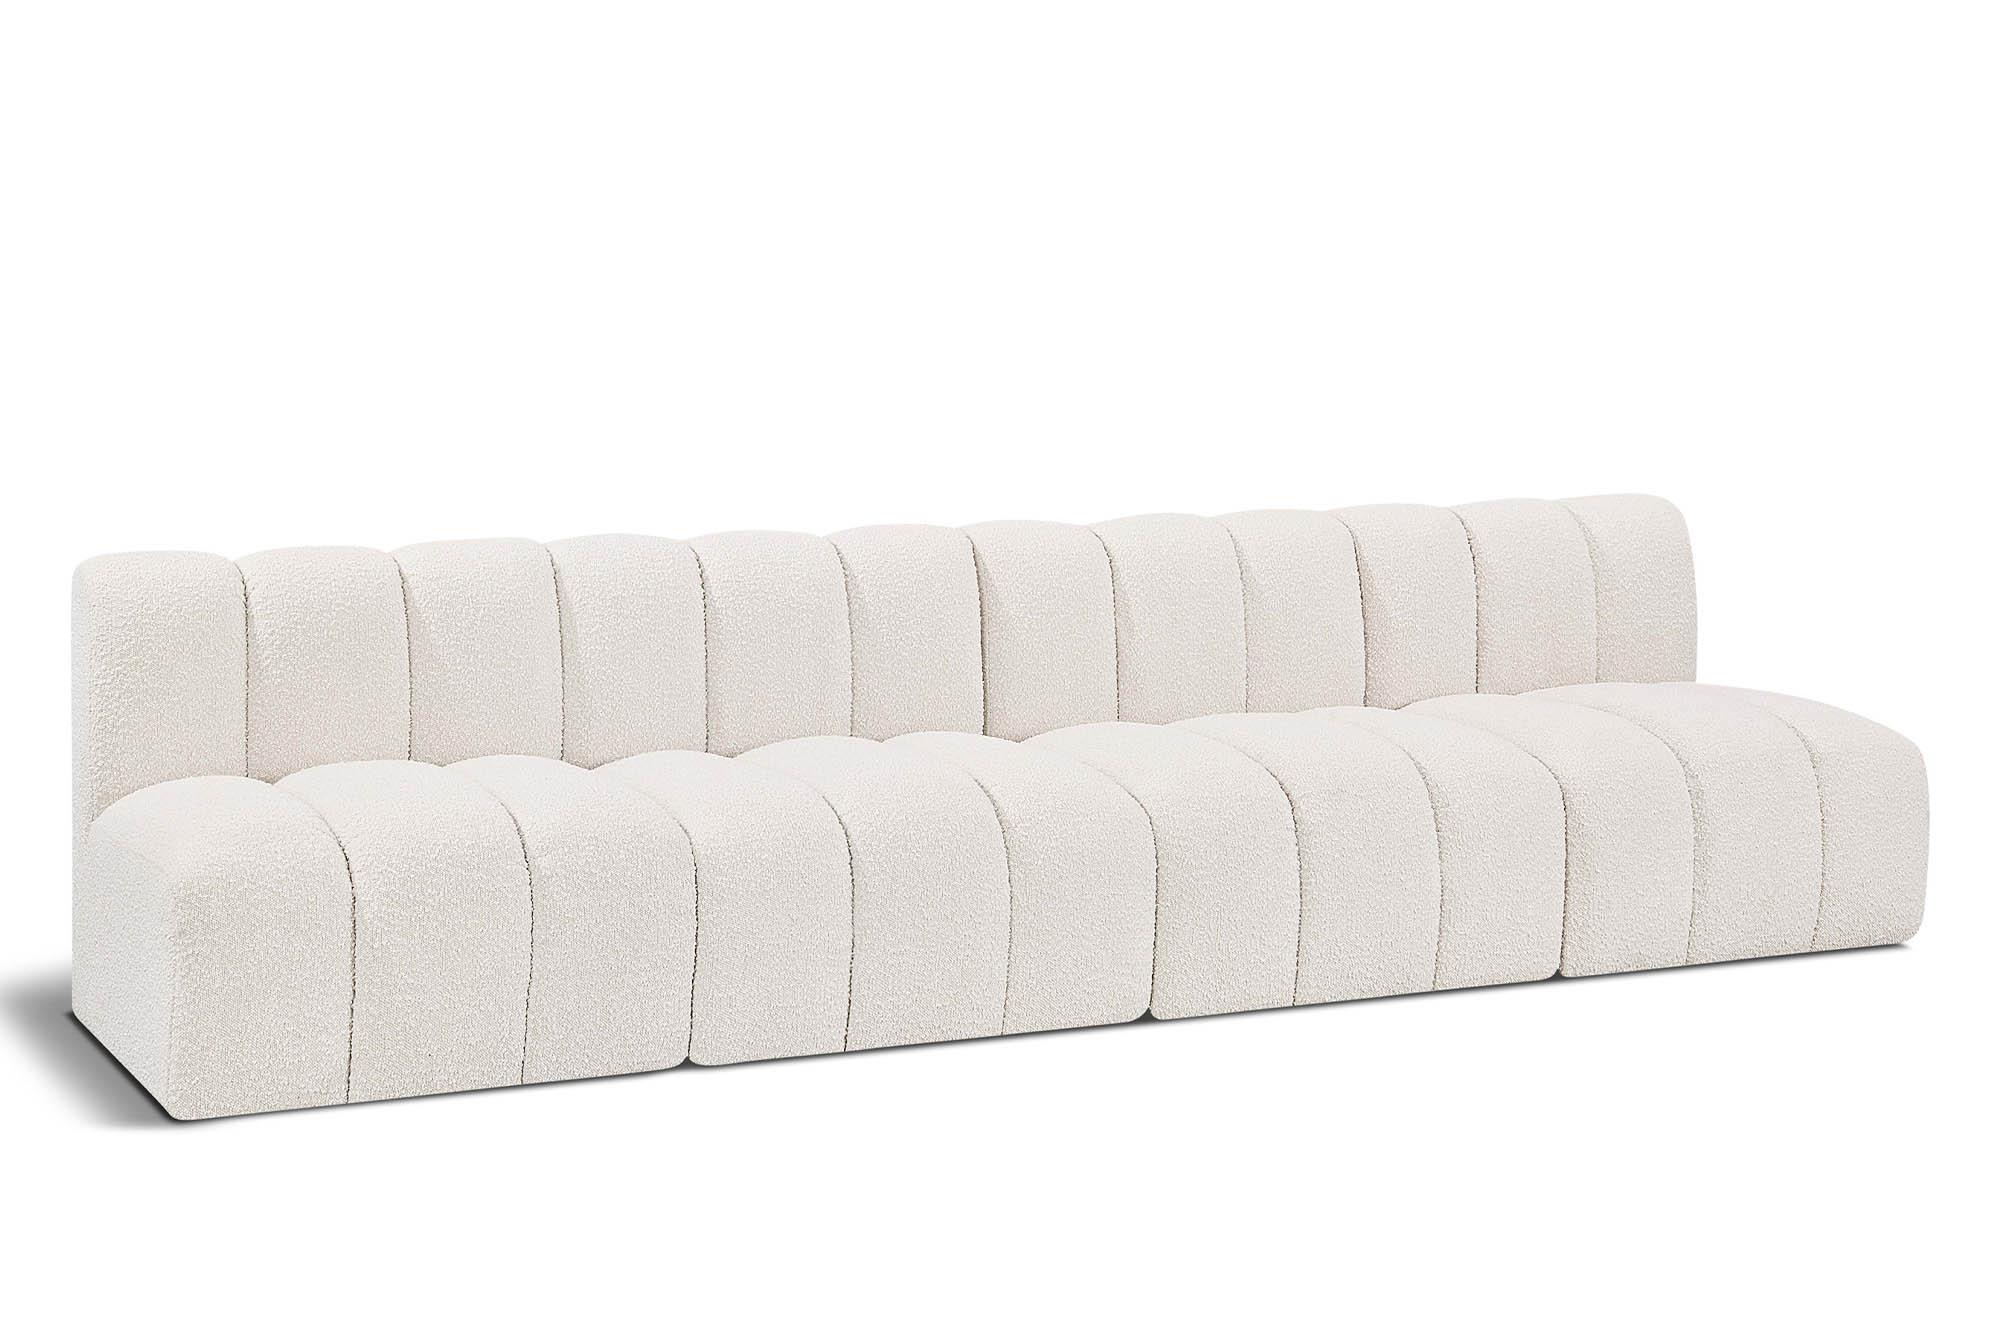 Contemporary, Modern Modular Sectional Sofa ARC 102Cream-S4E 102Cream-S4E in Cream 